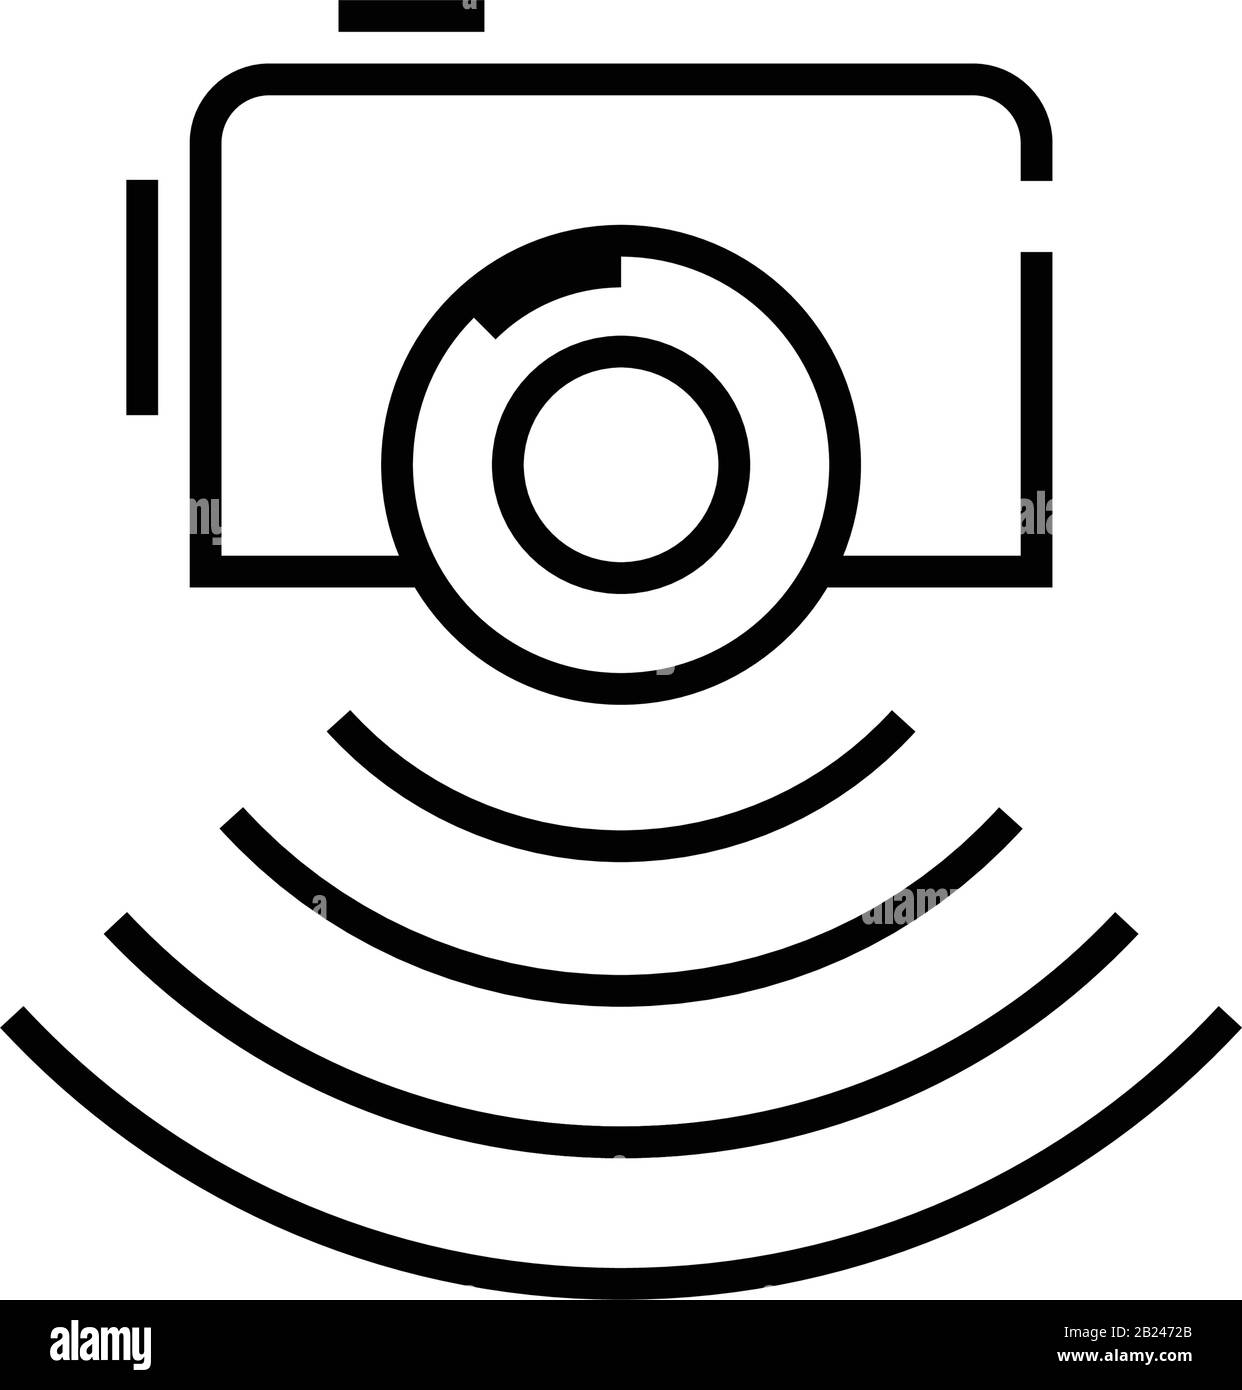 Icona della linea del report fotografico, simbolo concettuale, illustrazione del vettore di contorno, simbolo lineare. Illustrazione Vettoriale